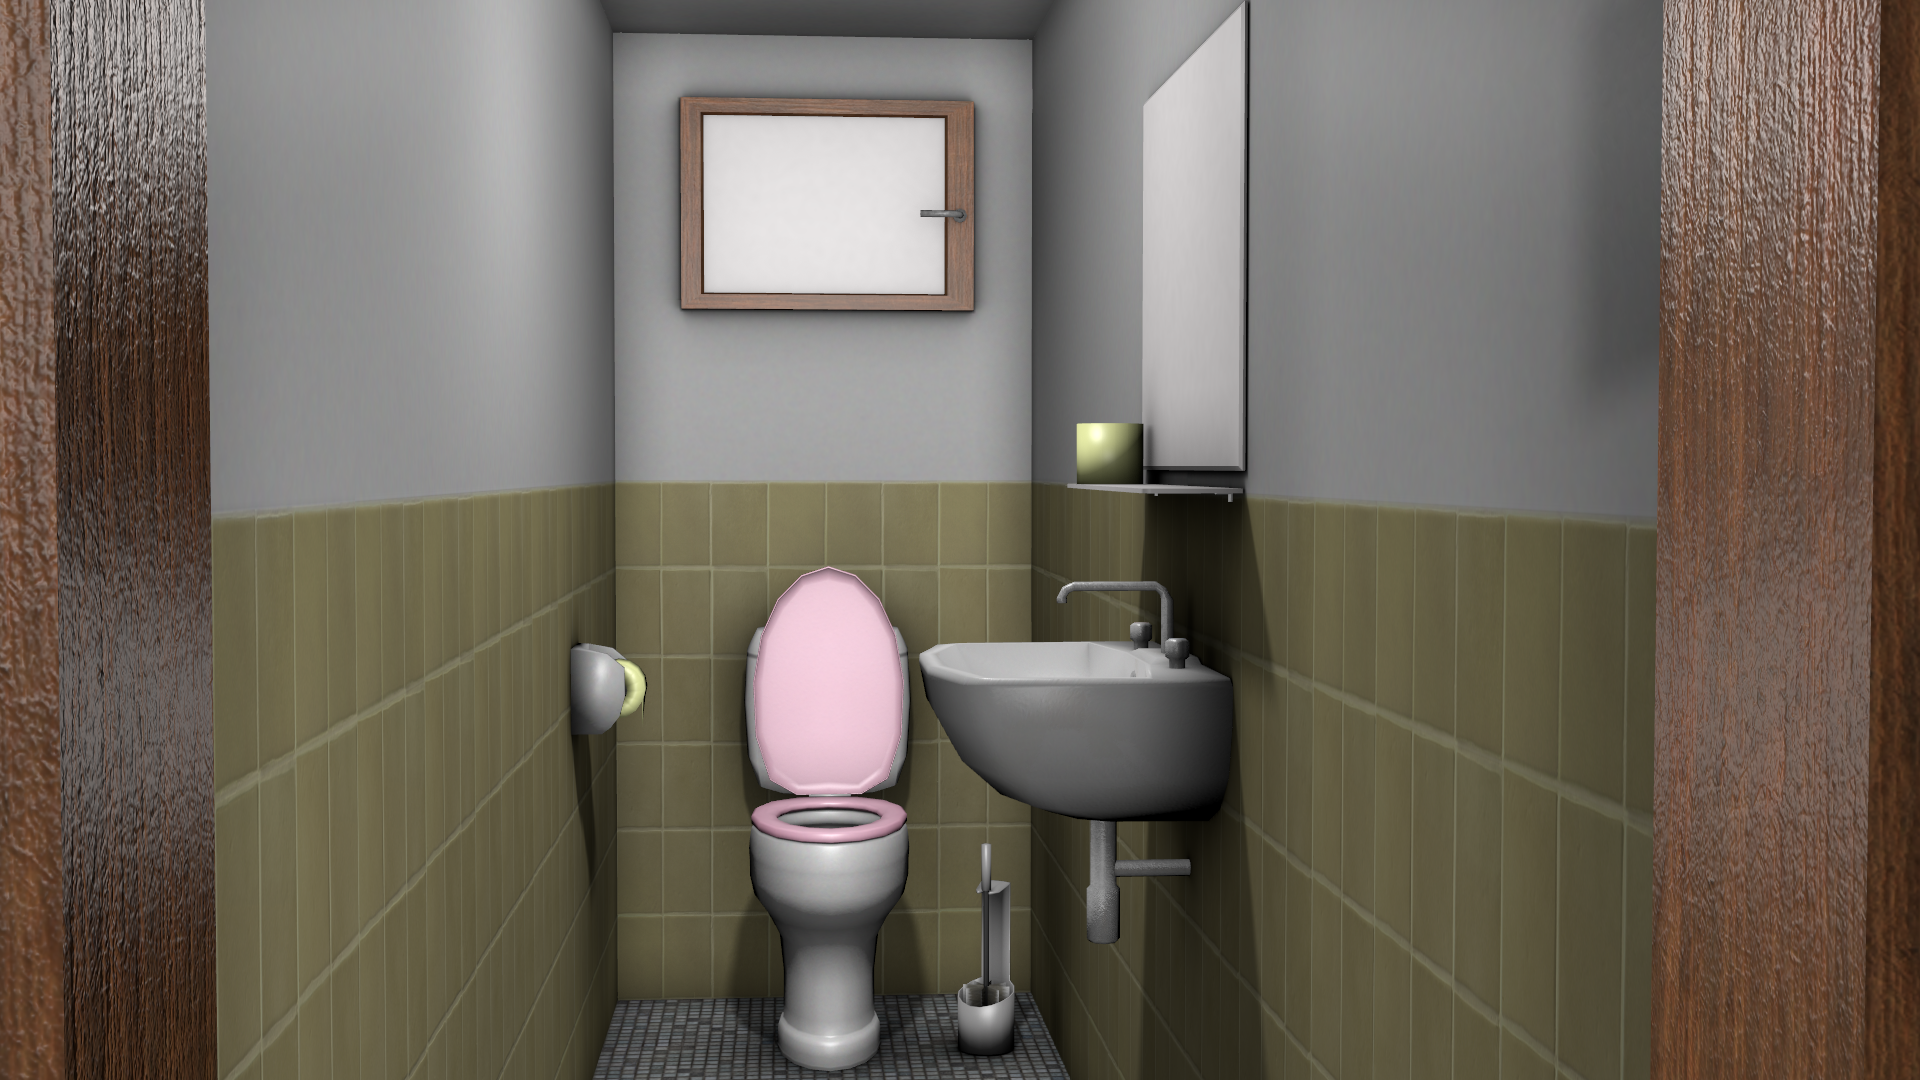 Public Bathroom Simulator script